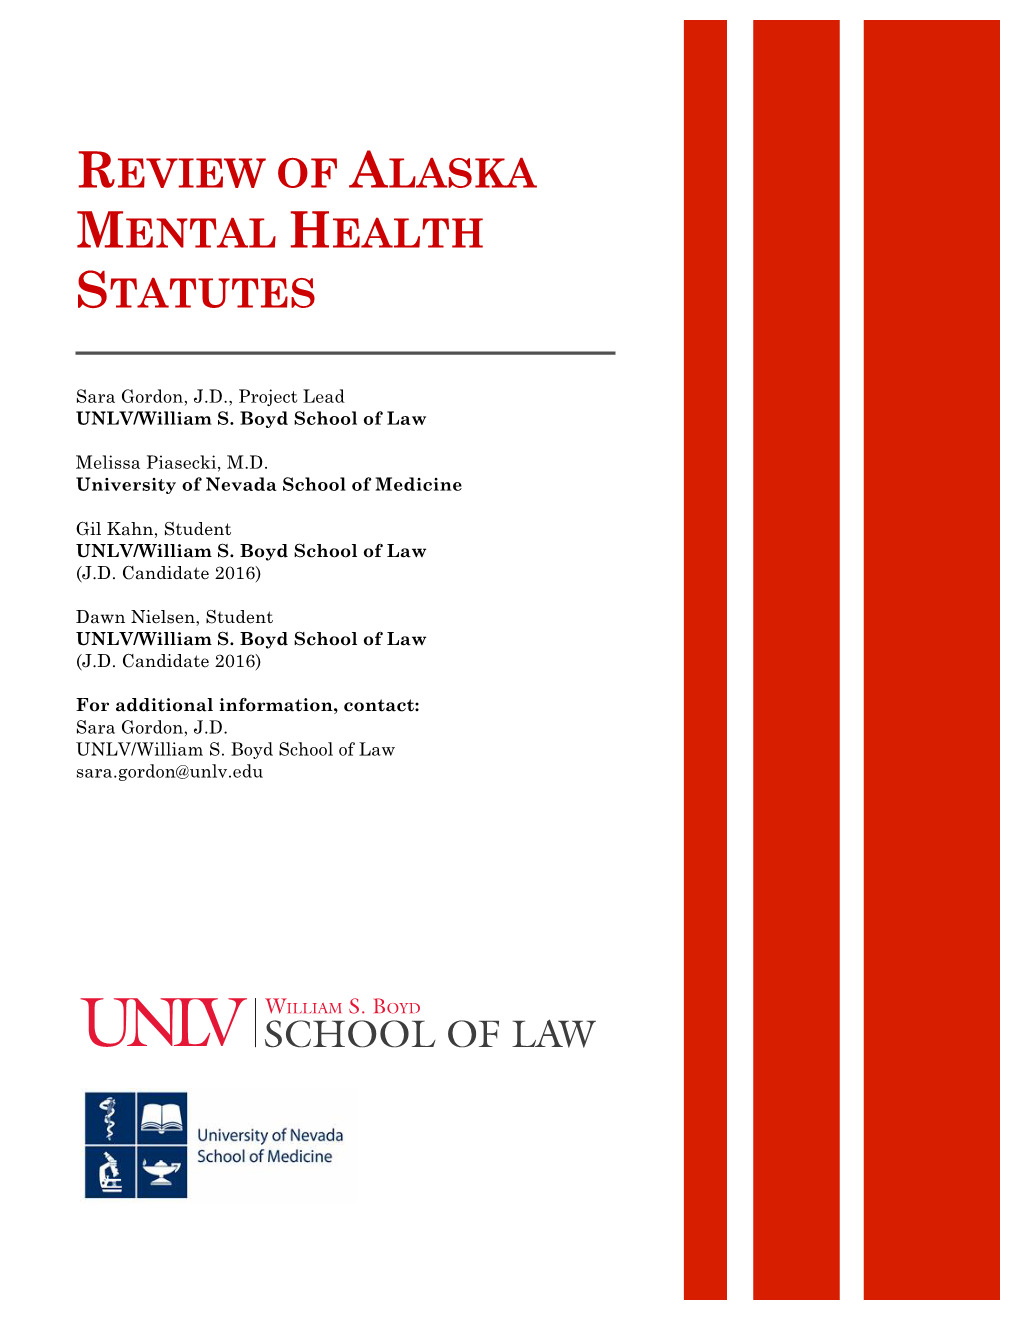 Review of Alaska Mental Health Statutes, 2014